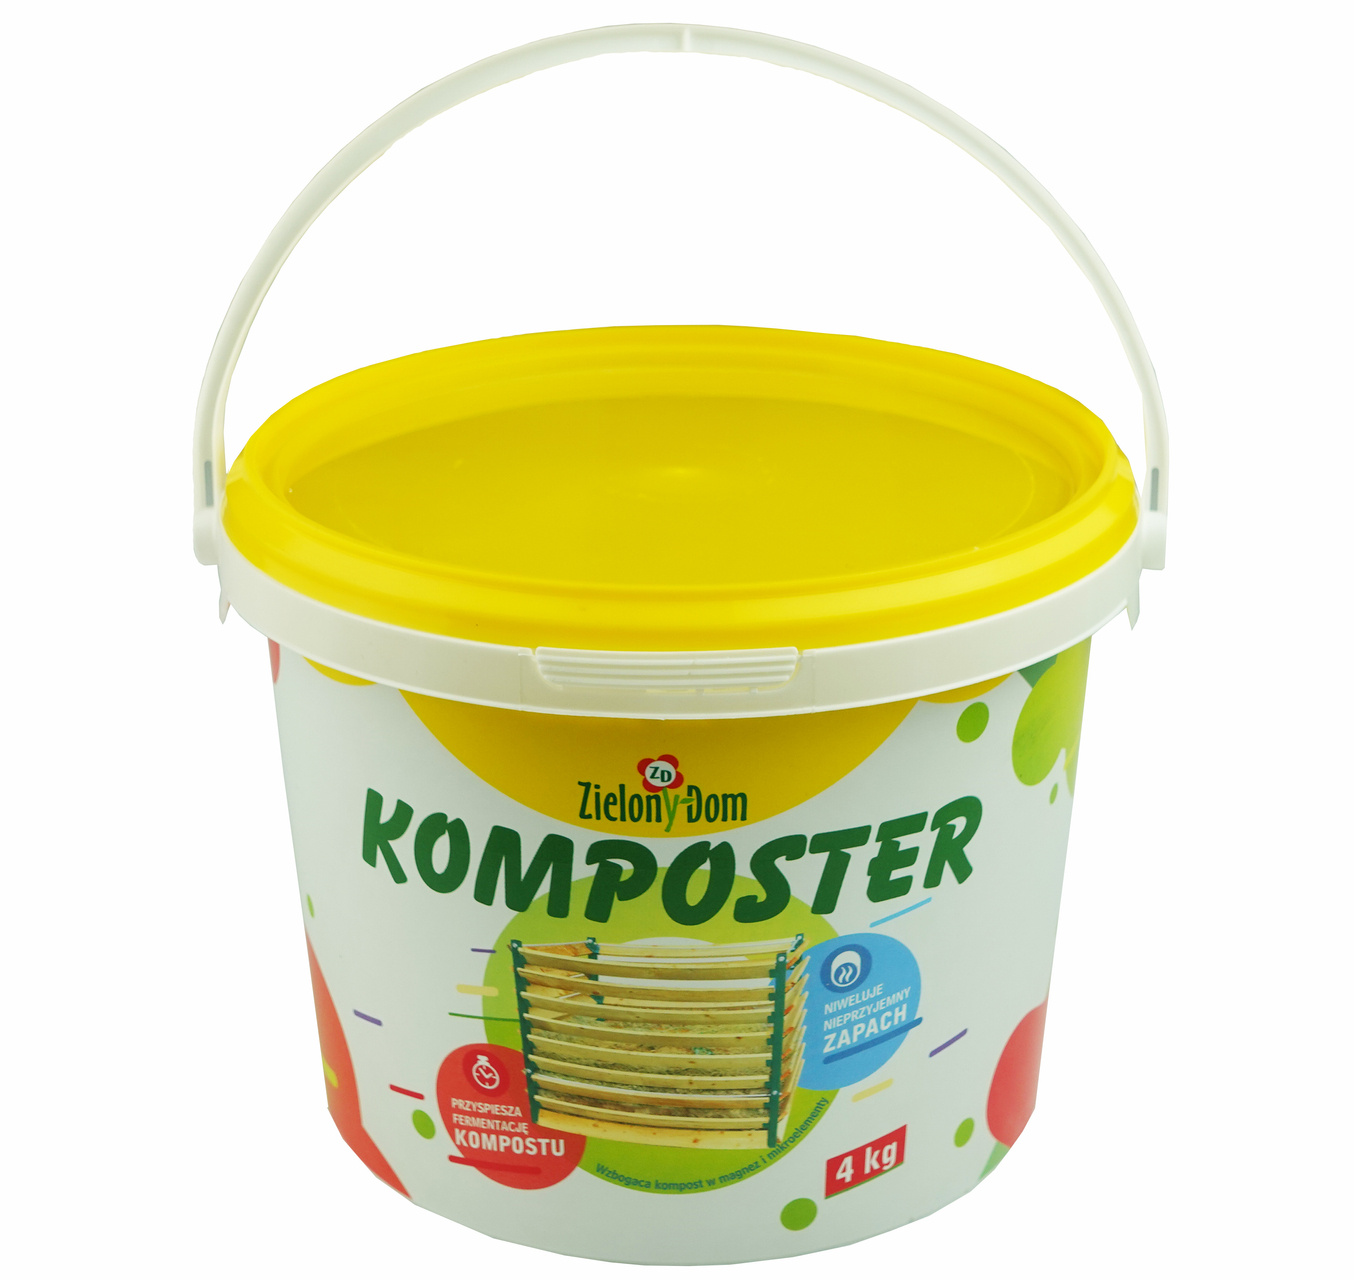 Zdjęcie główne produktu: Nawóz do kompostowania Komposter Zielony Dom 4kg